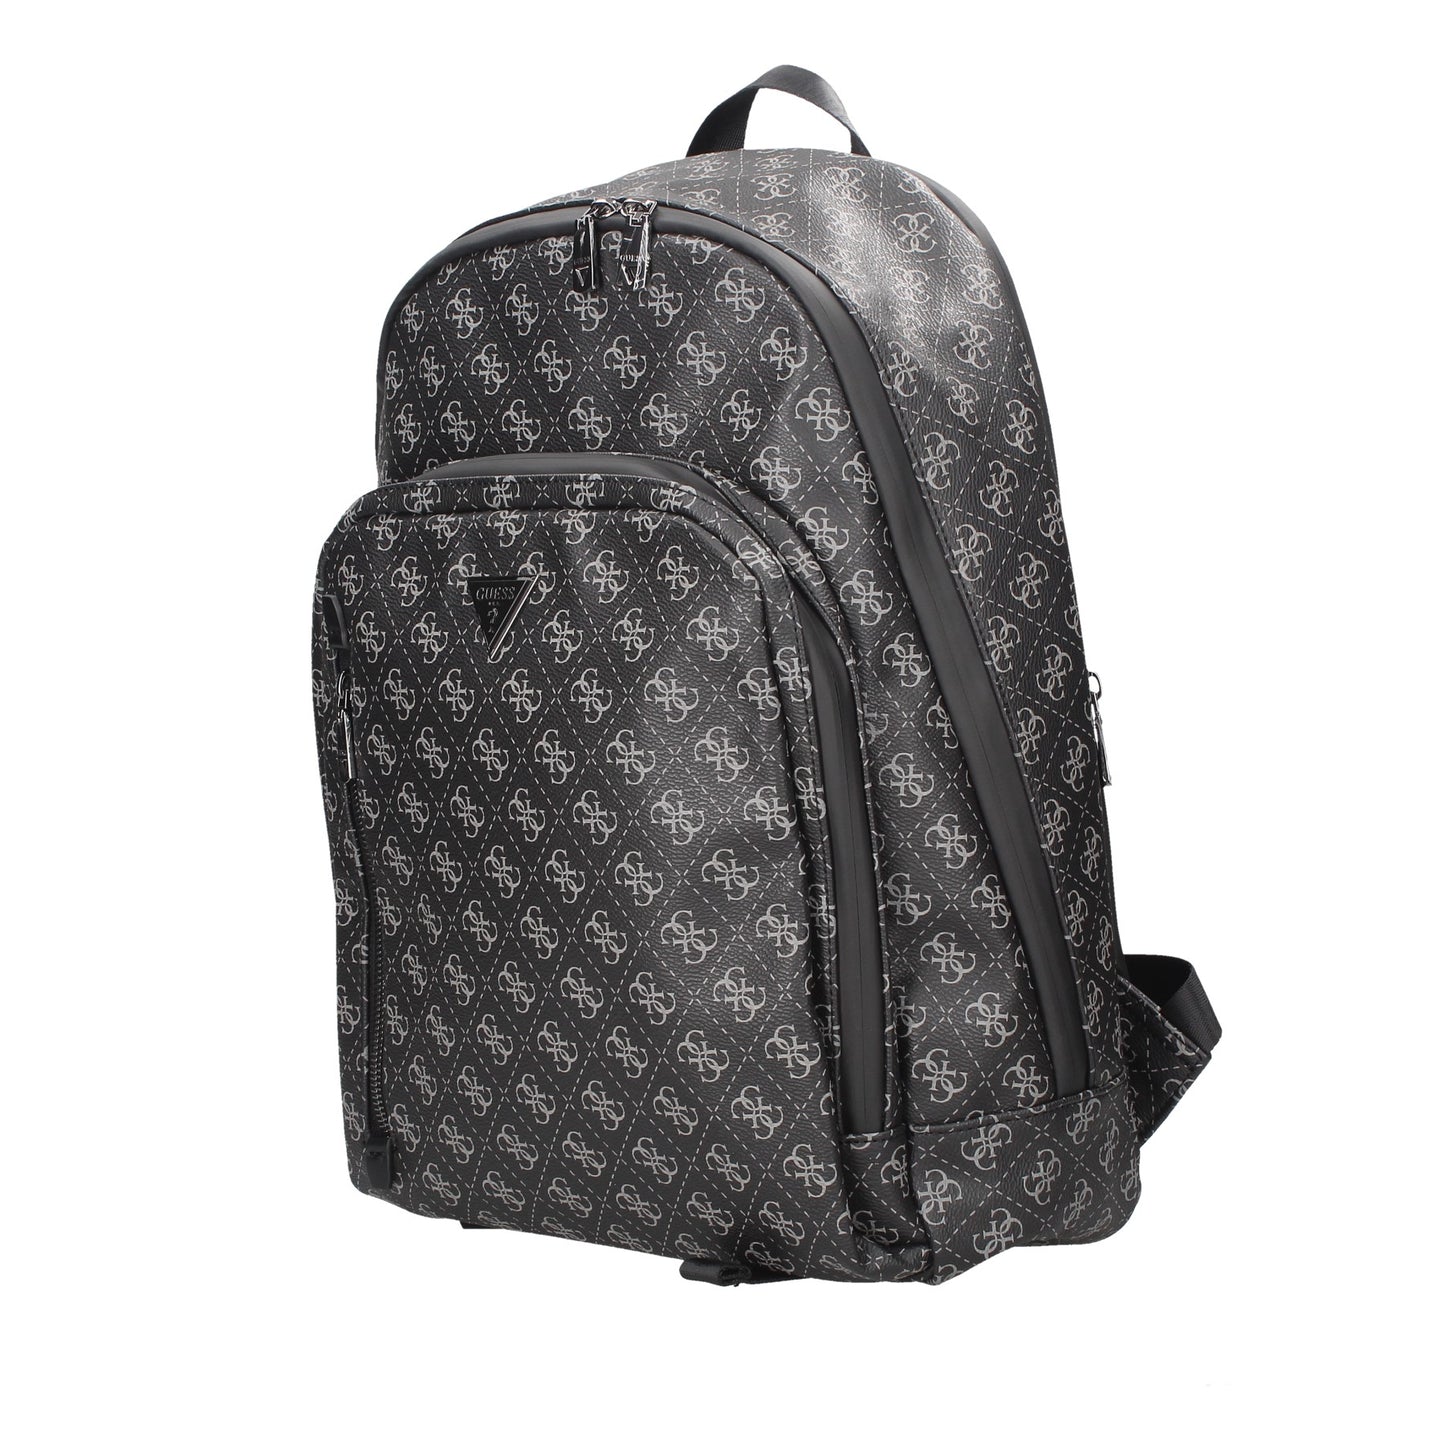 HMEVZLP3241 GUESS backpack